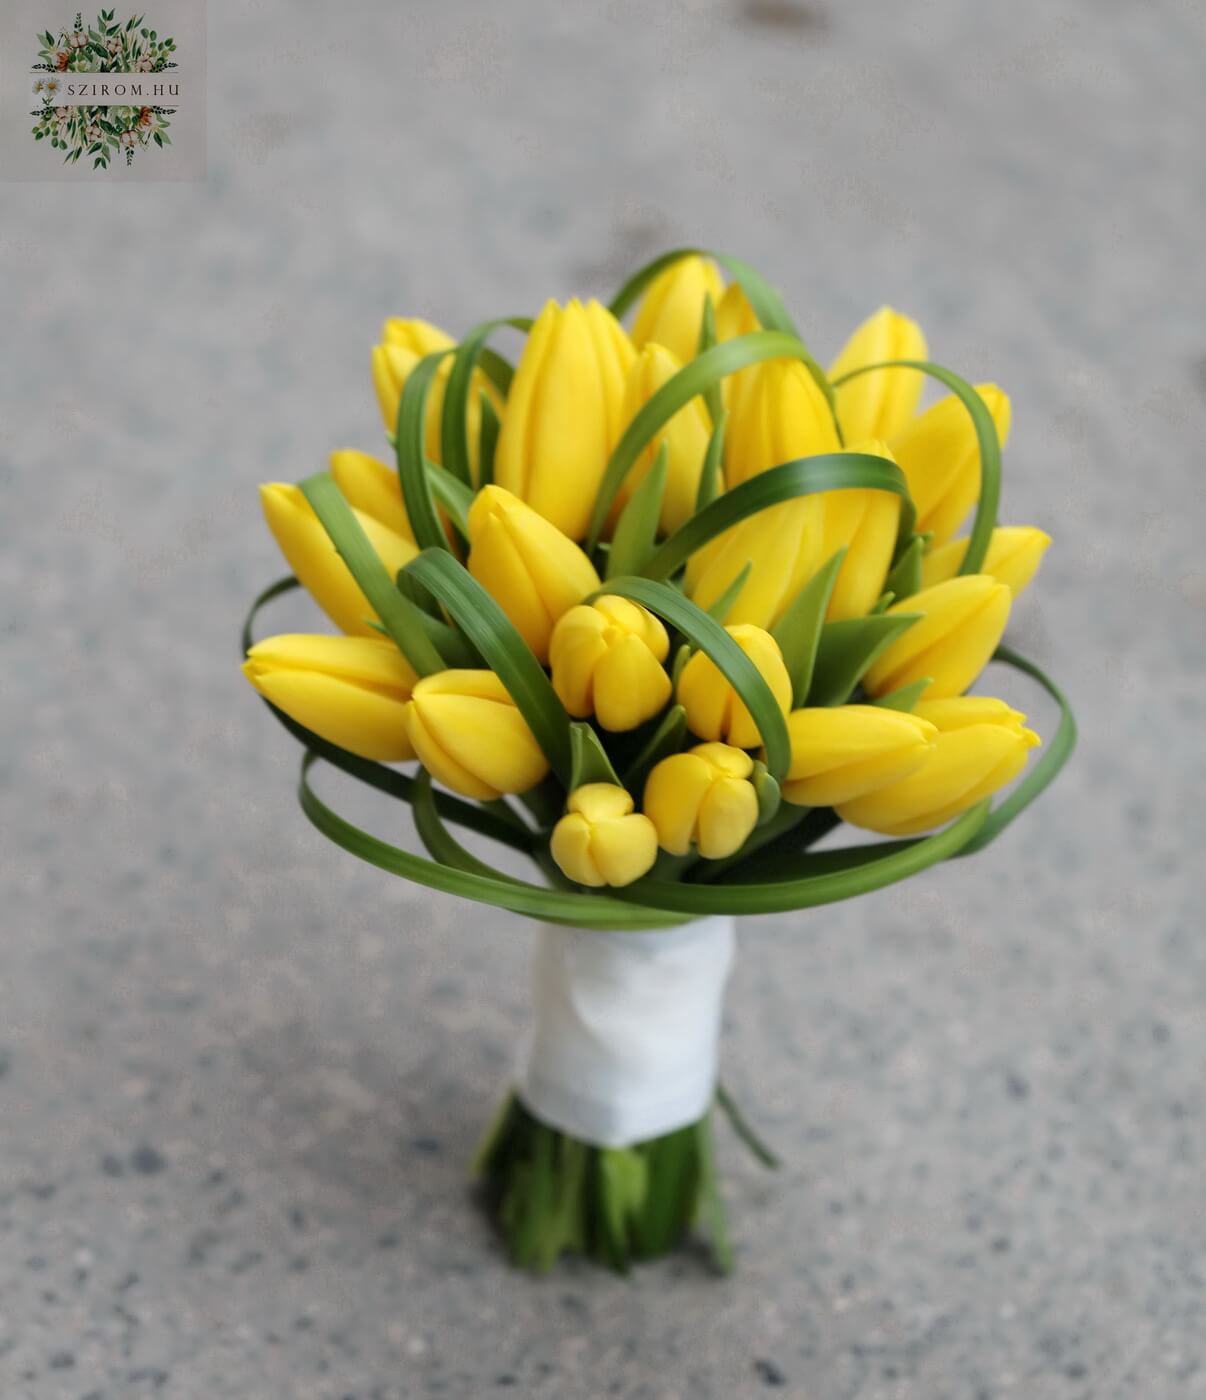 Menyasszonyi csokor sárga tulipánból (tulipán, sárga)